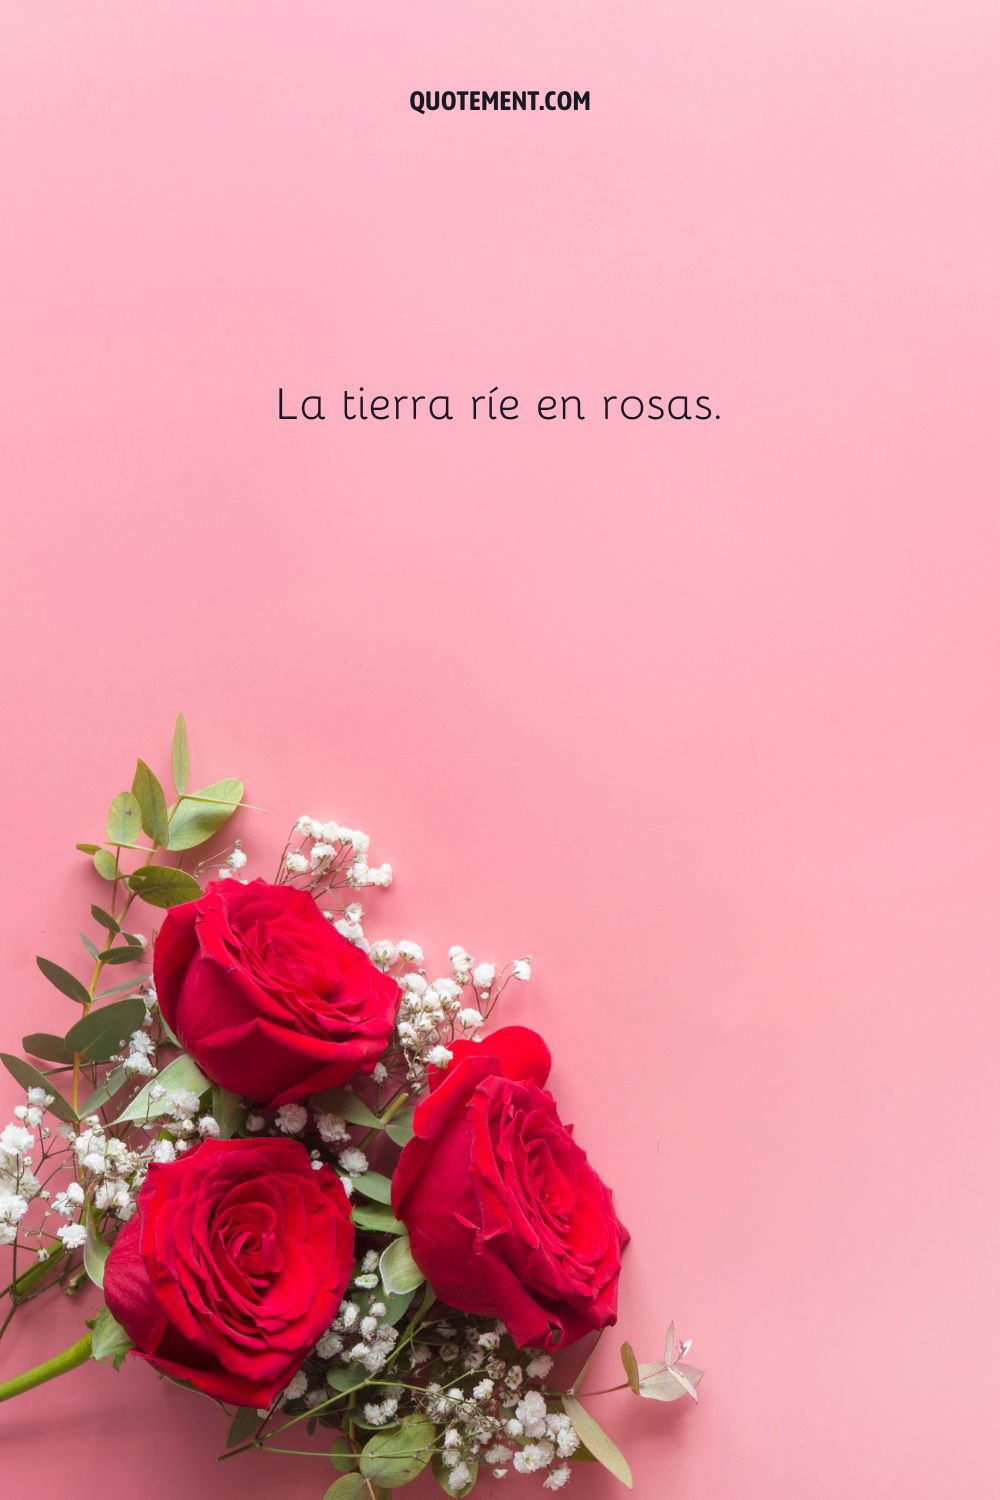 La tierra ríe en rosas.